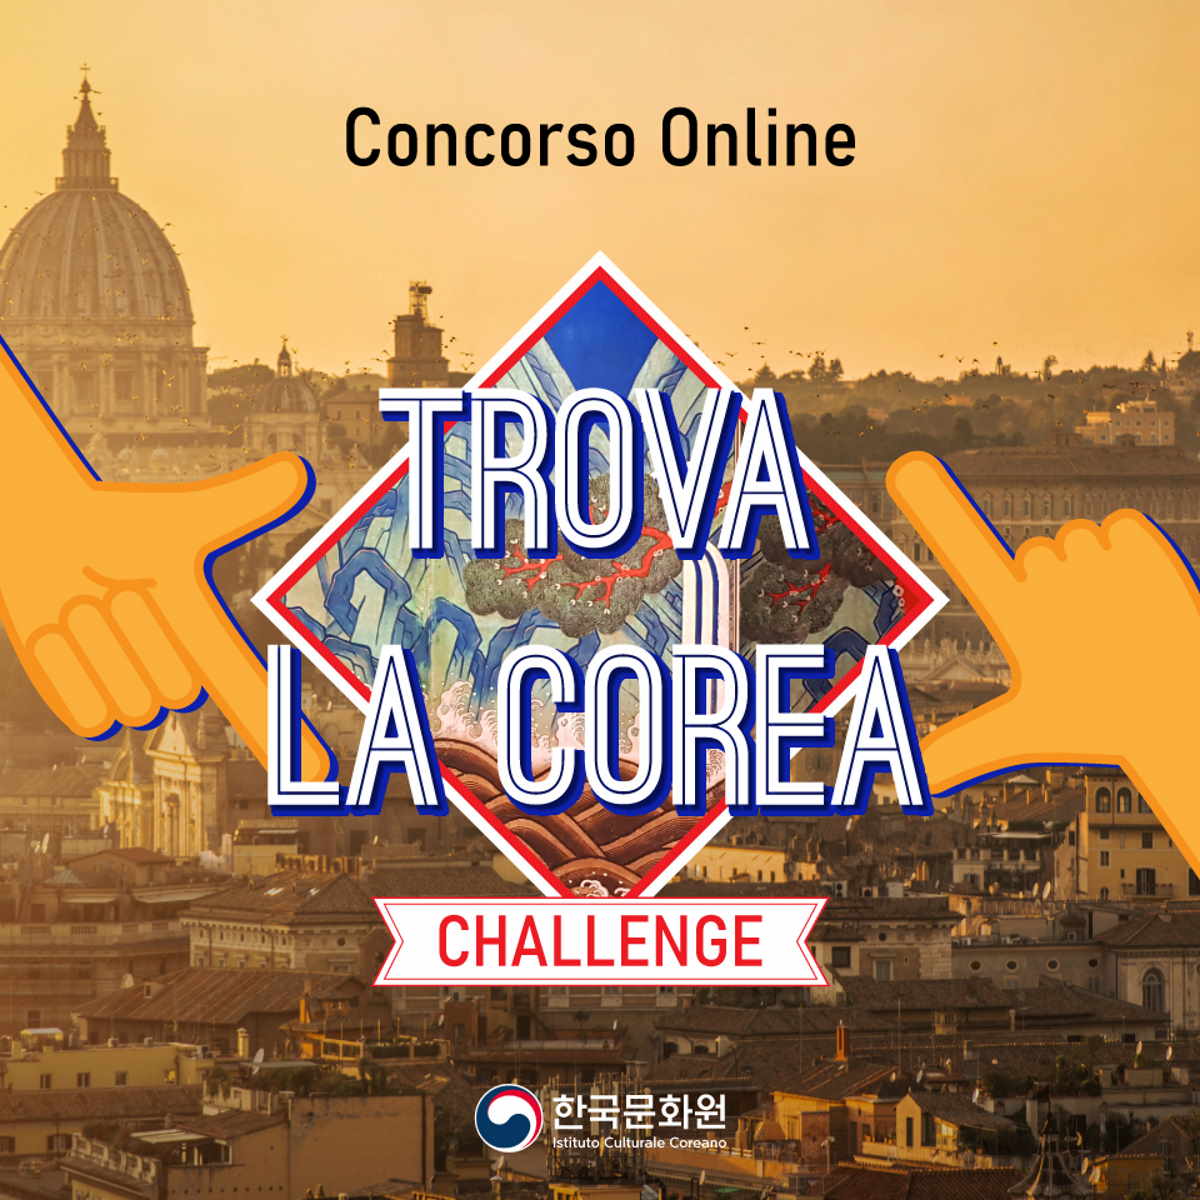 Ultimi giorni per partecipare a “Trova la Corea”, il concorso per gli instagrammer italiani dell’Istituto Culturale Coreano